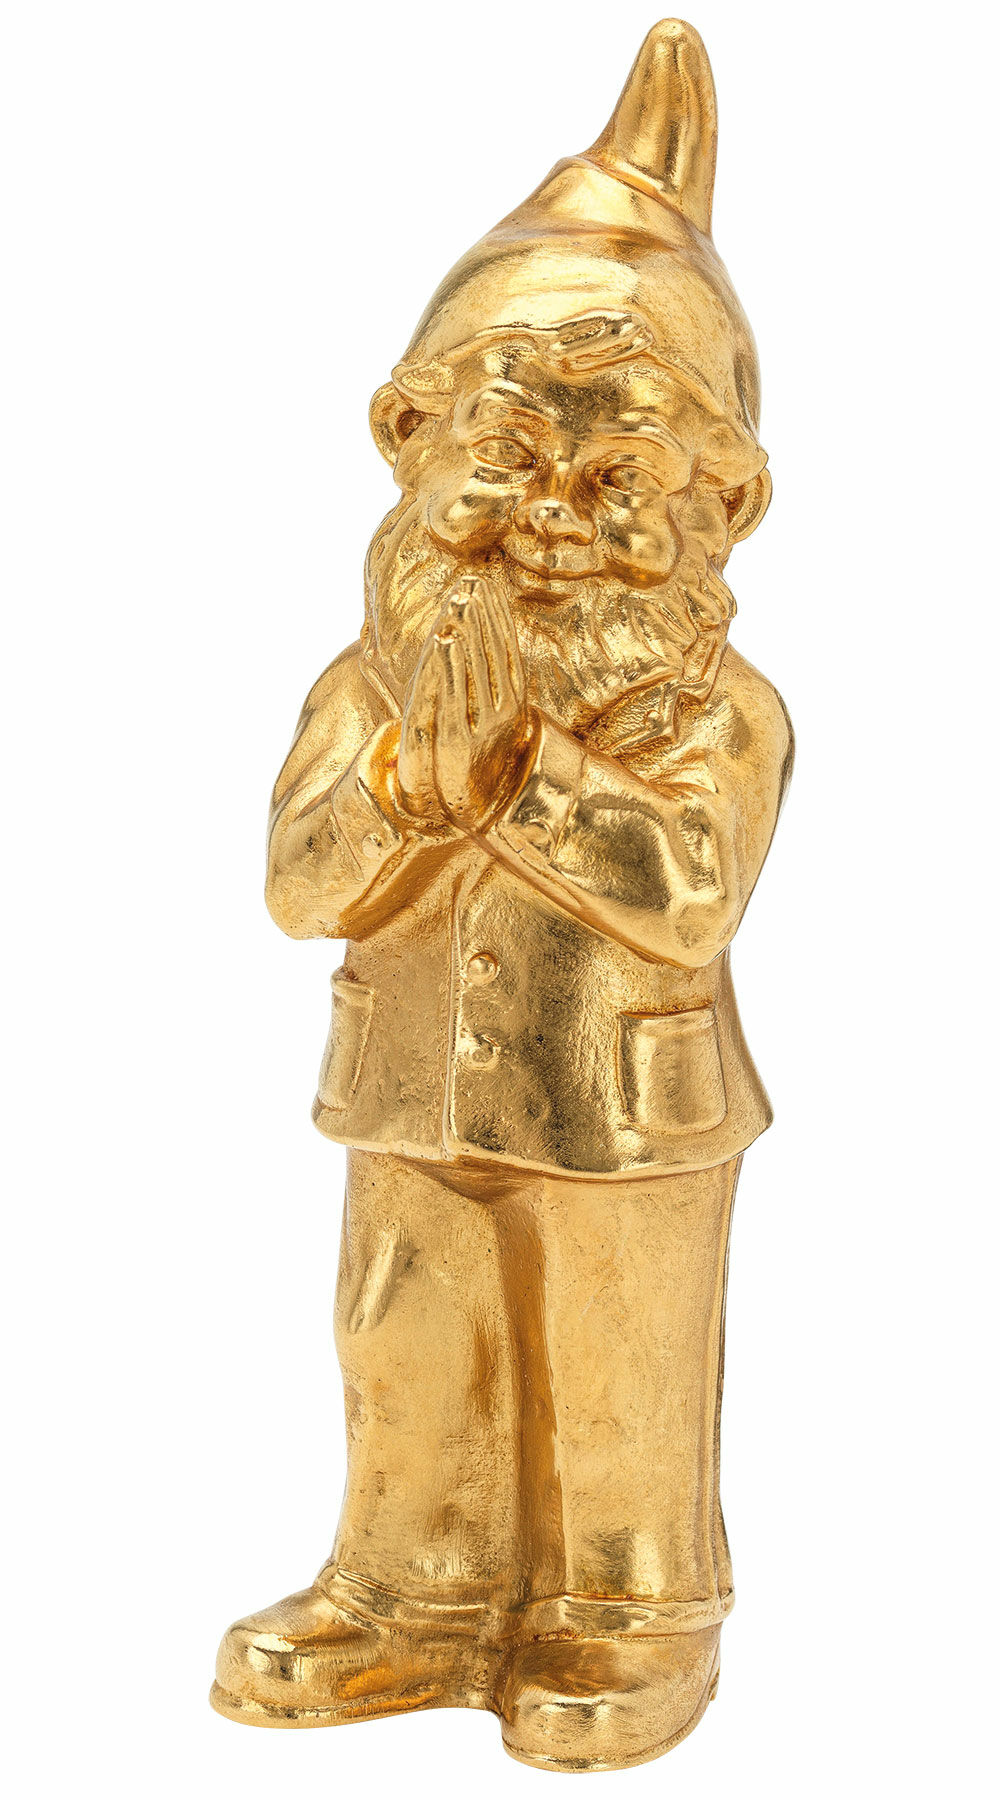 Skulptur "Ben", guldbelagt version von Ottmar Hörl